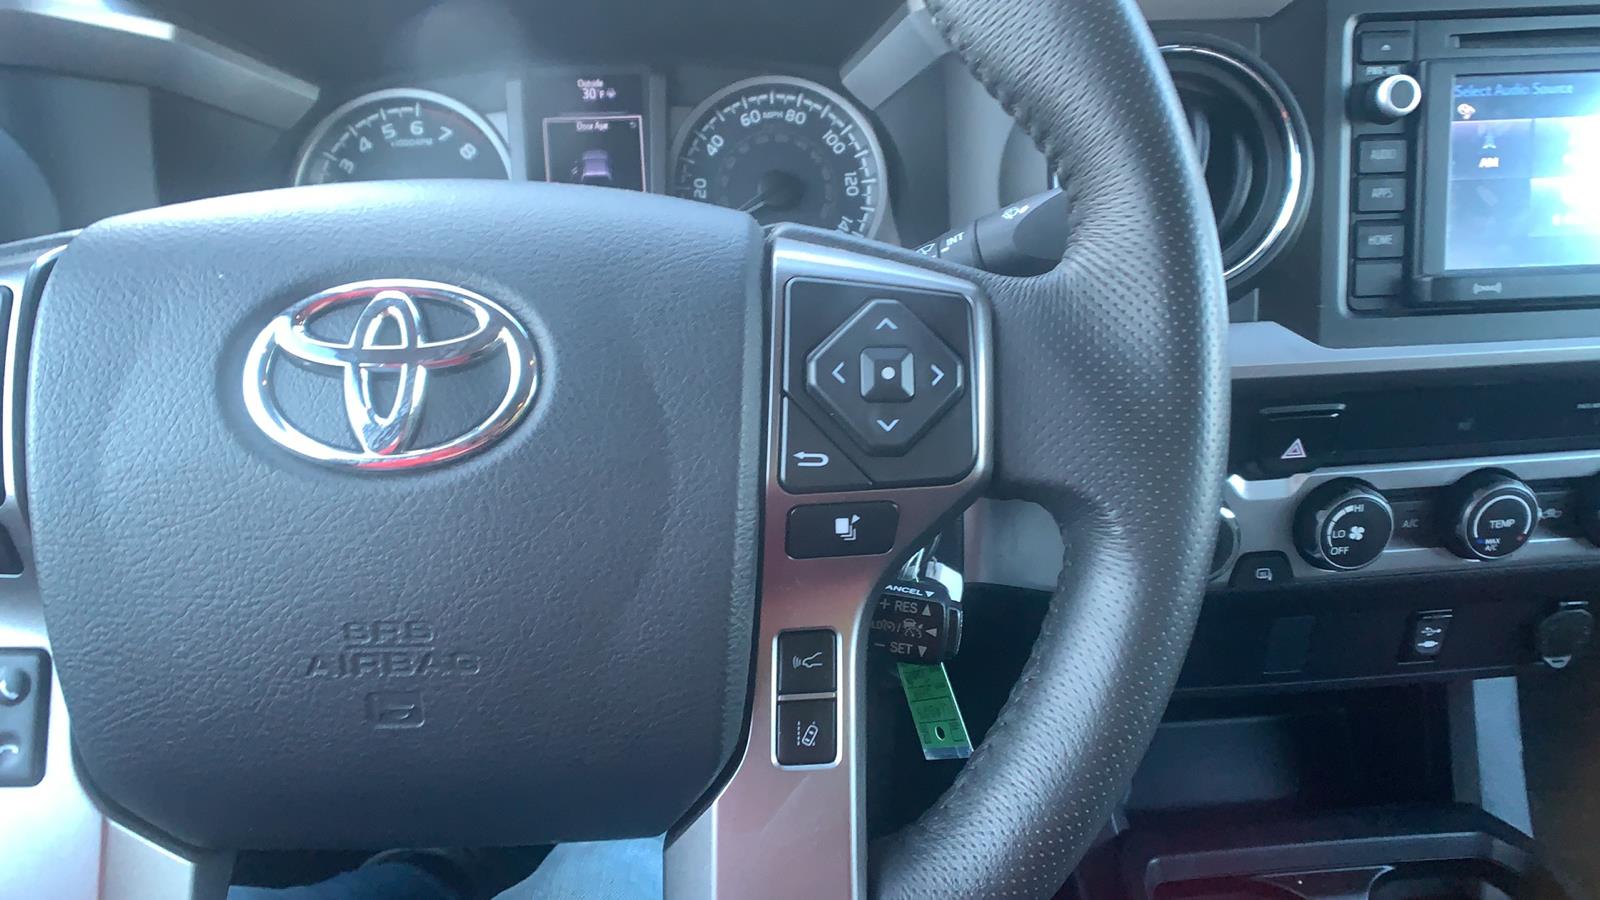 2019 Toyota Tacoma Access Cab